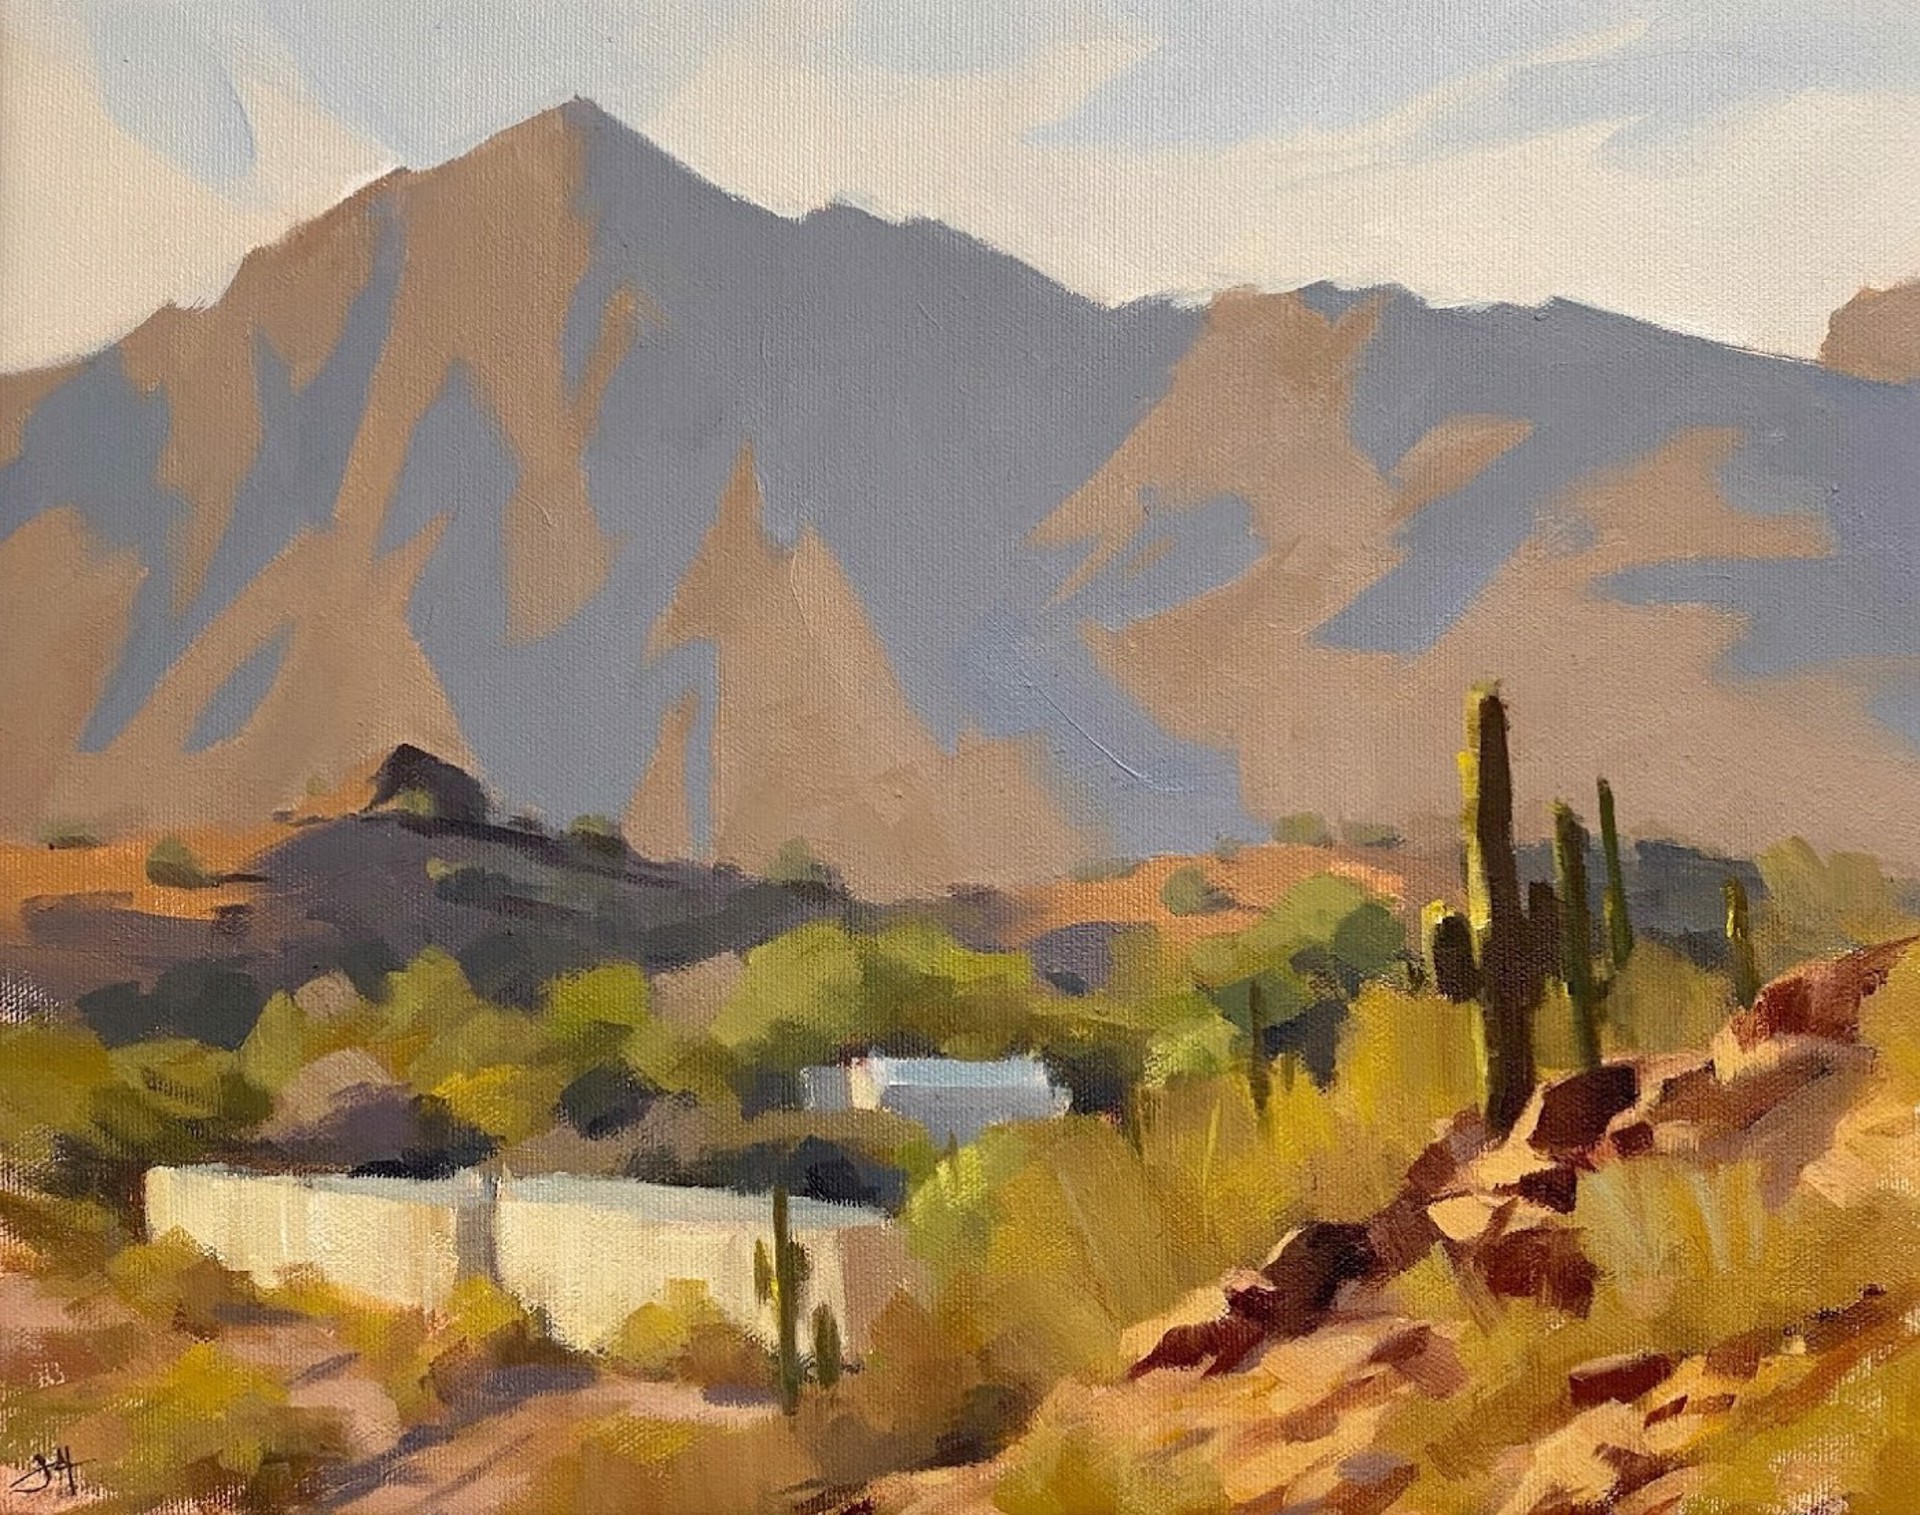 Desert Watch by Judd Mercer